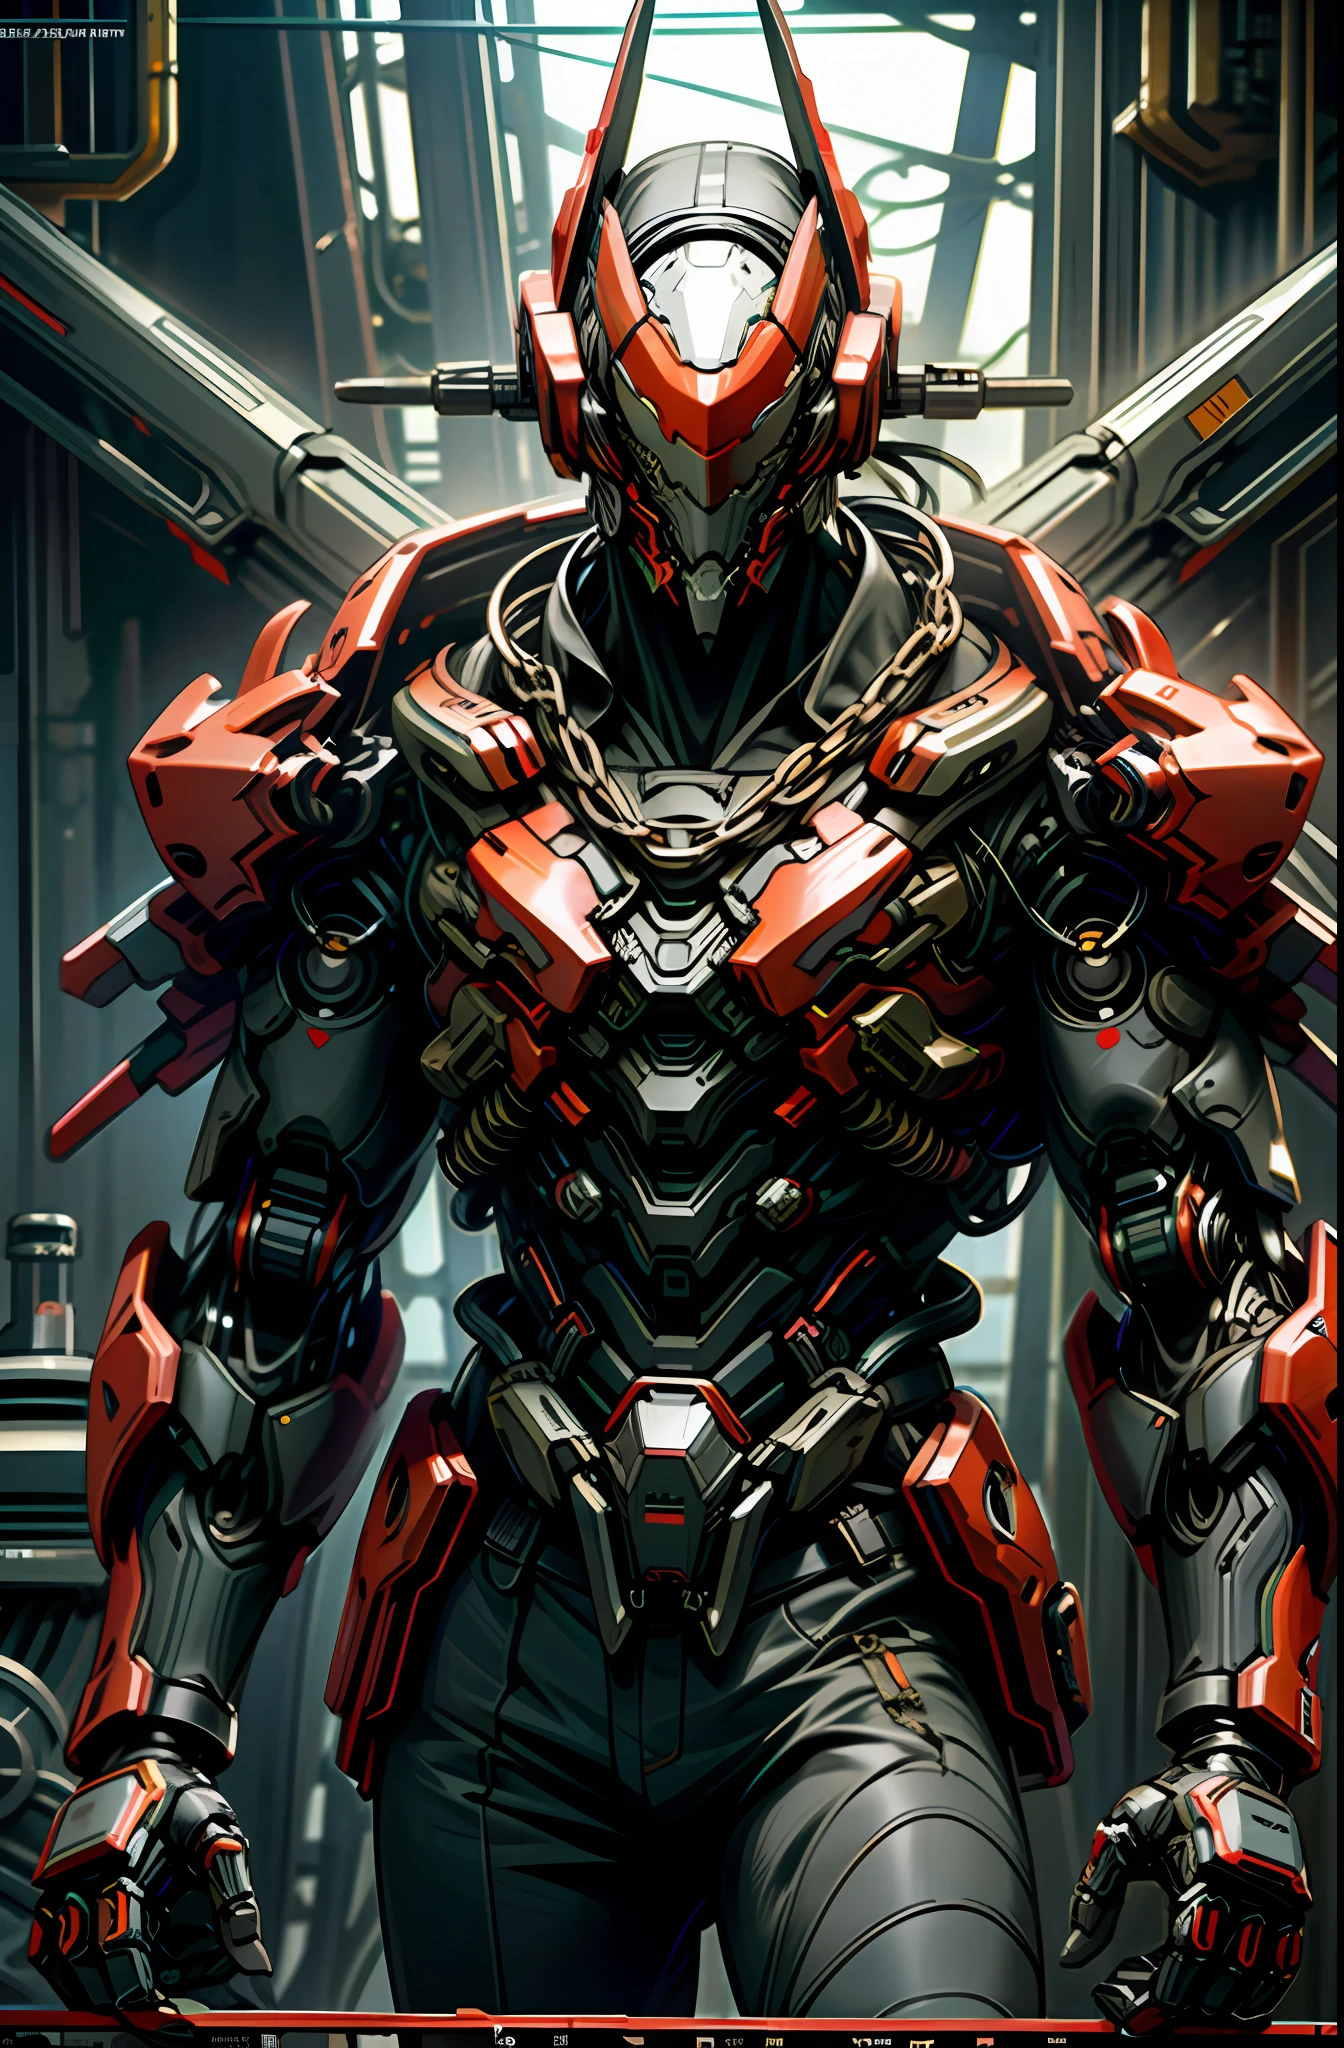 Sombre_fantaisie,Cyberpunk,(tronçonneuse,tronçonneuse man,Rouge:1.1),1 homme,Merveille mécanique,Présence robotique,Gardien cybernétique,